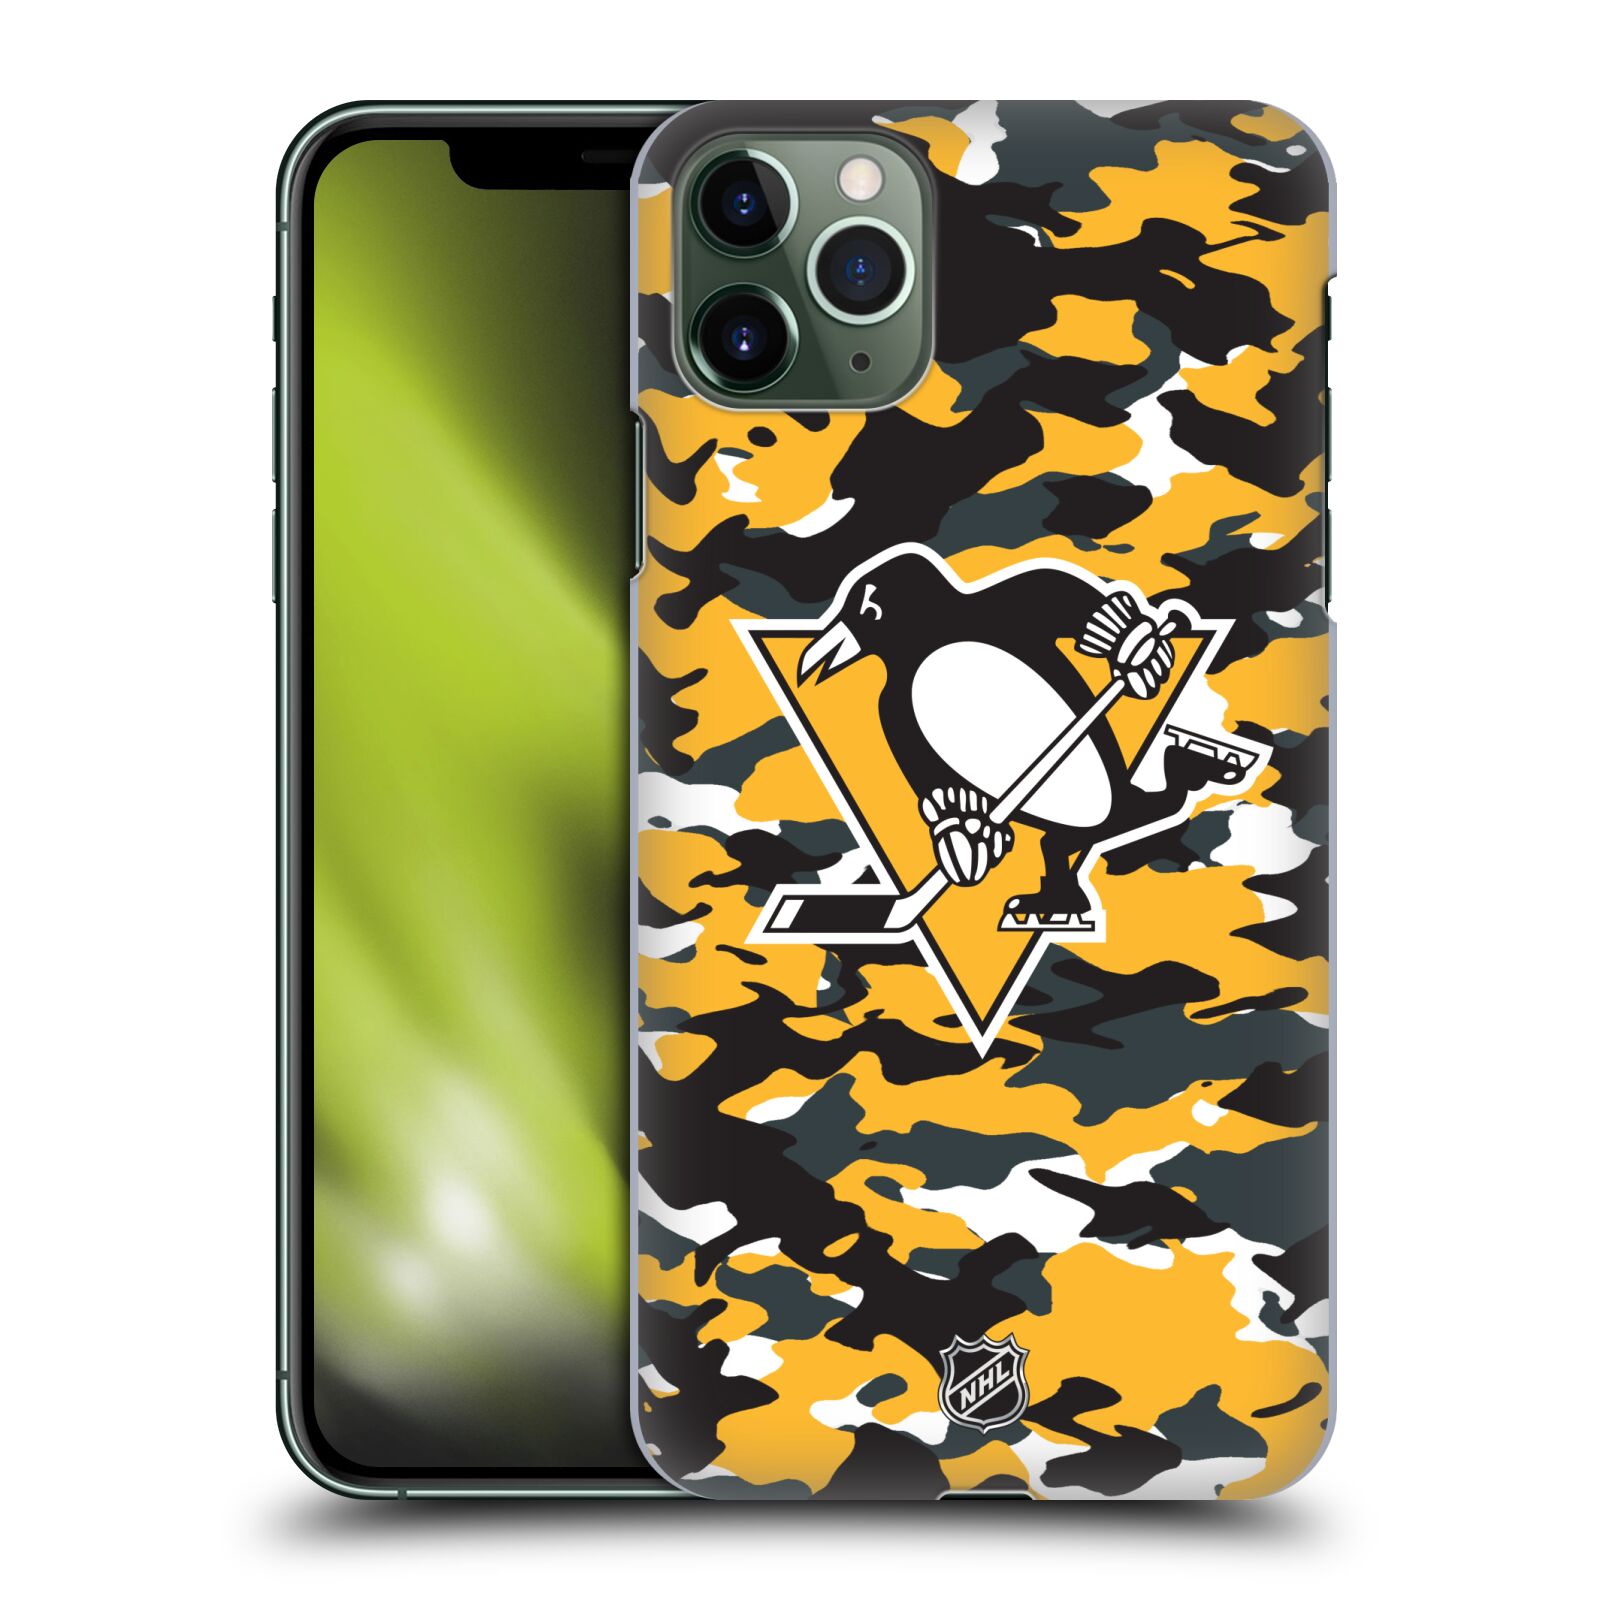 Pouzdro na mobil Apple Iphone 11 PRO MAX - HEAD CASE - Hokej NHL - Pittsburgh Penguins - kamufláž znak